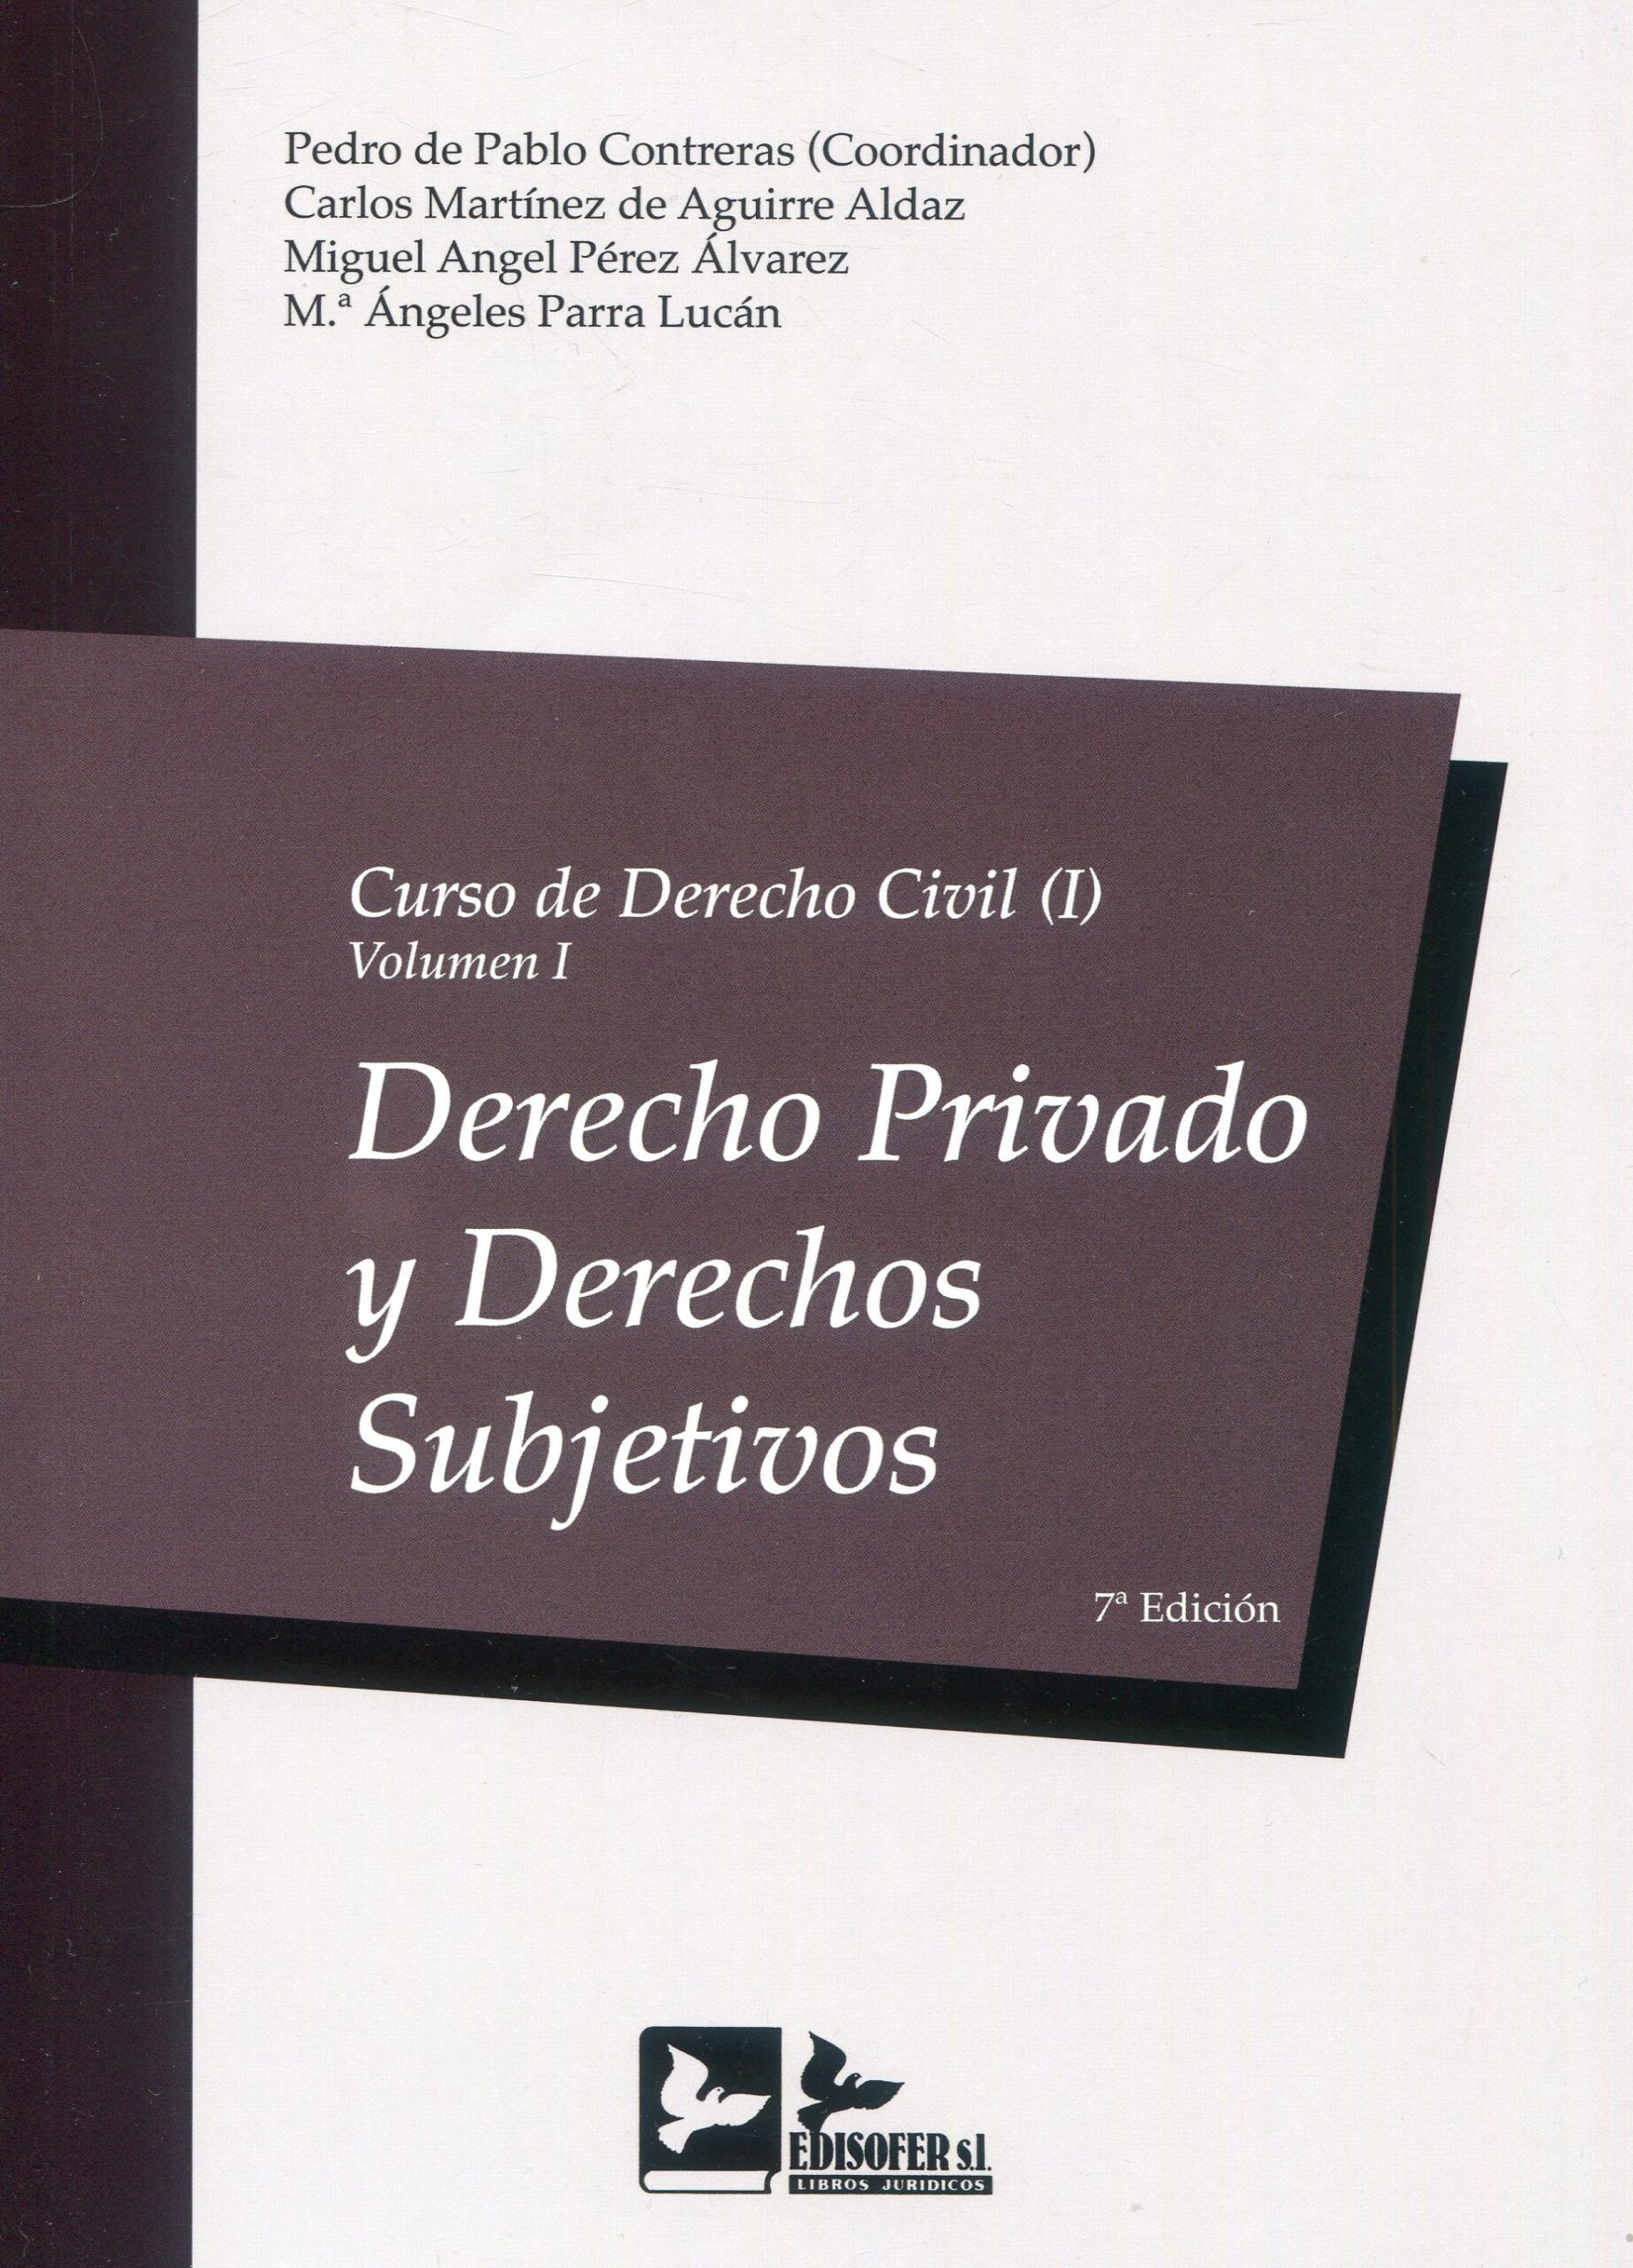 Curso de Derecho Civil I. Volumen I. Derecho privado y derechos subjetivos